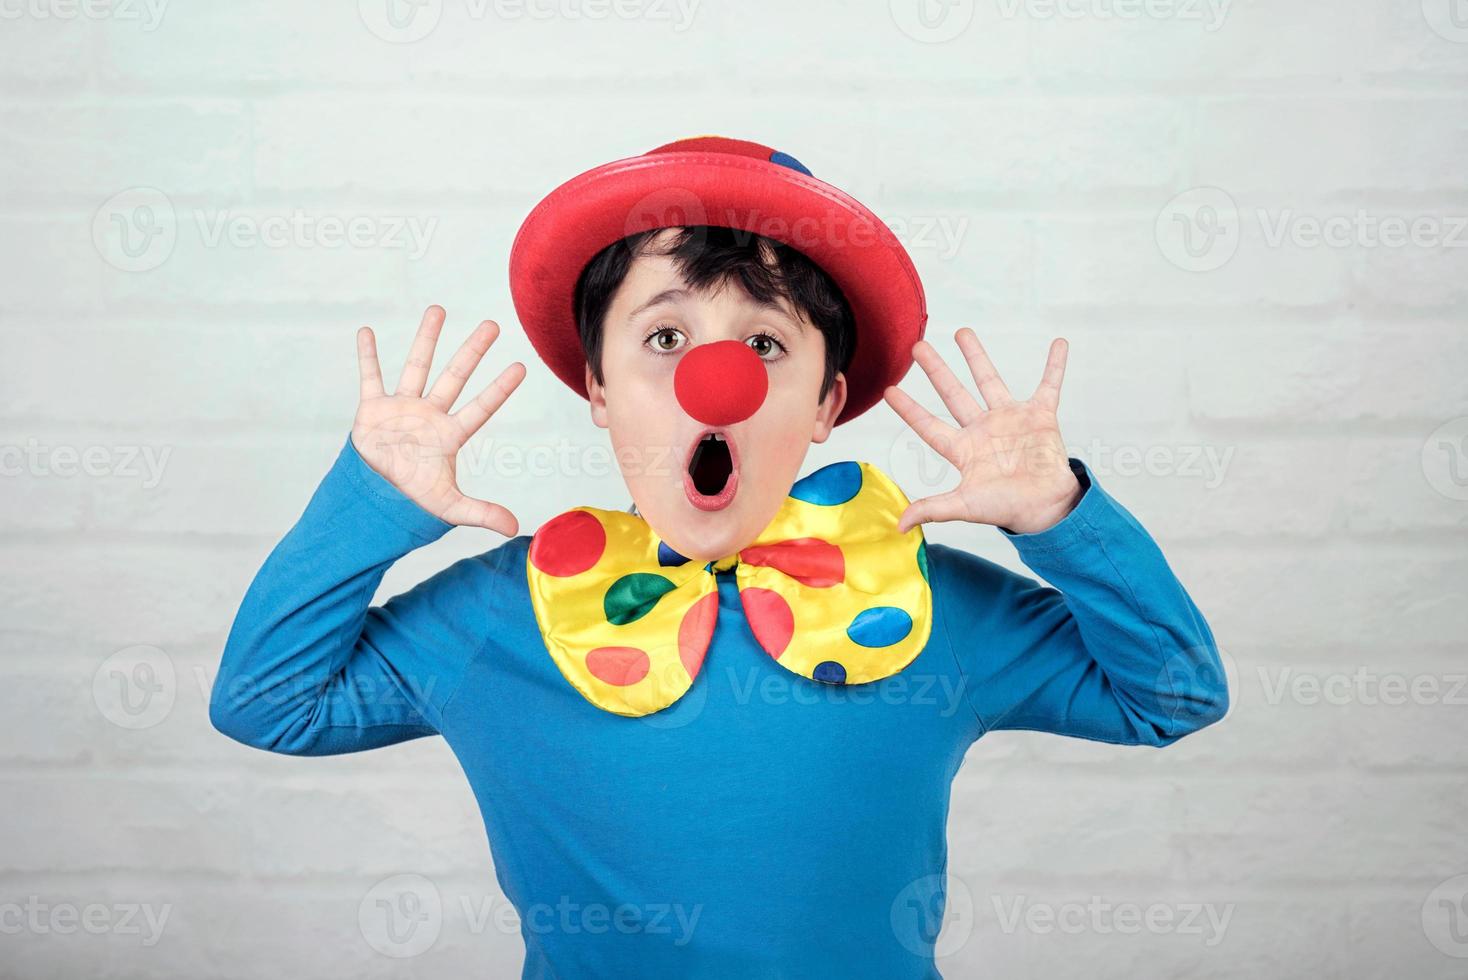 Kind mit Clownsnase und Hut foto